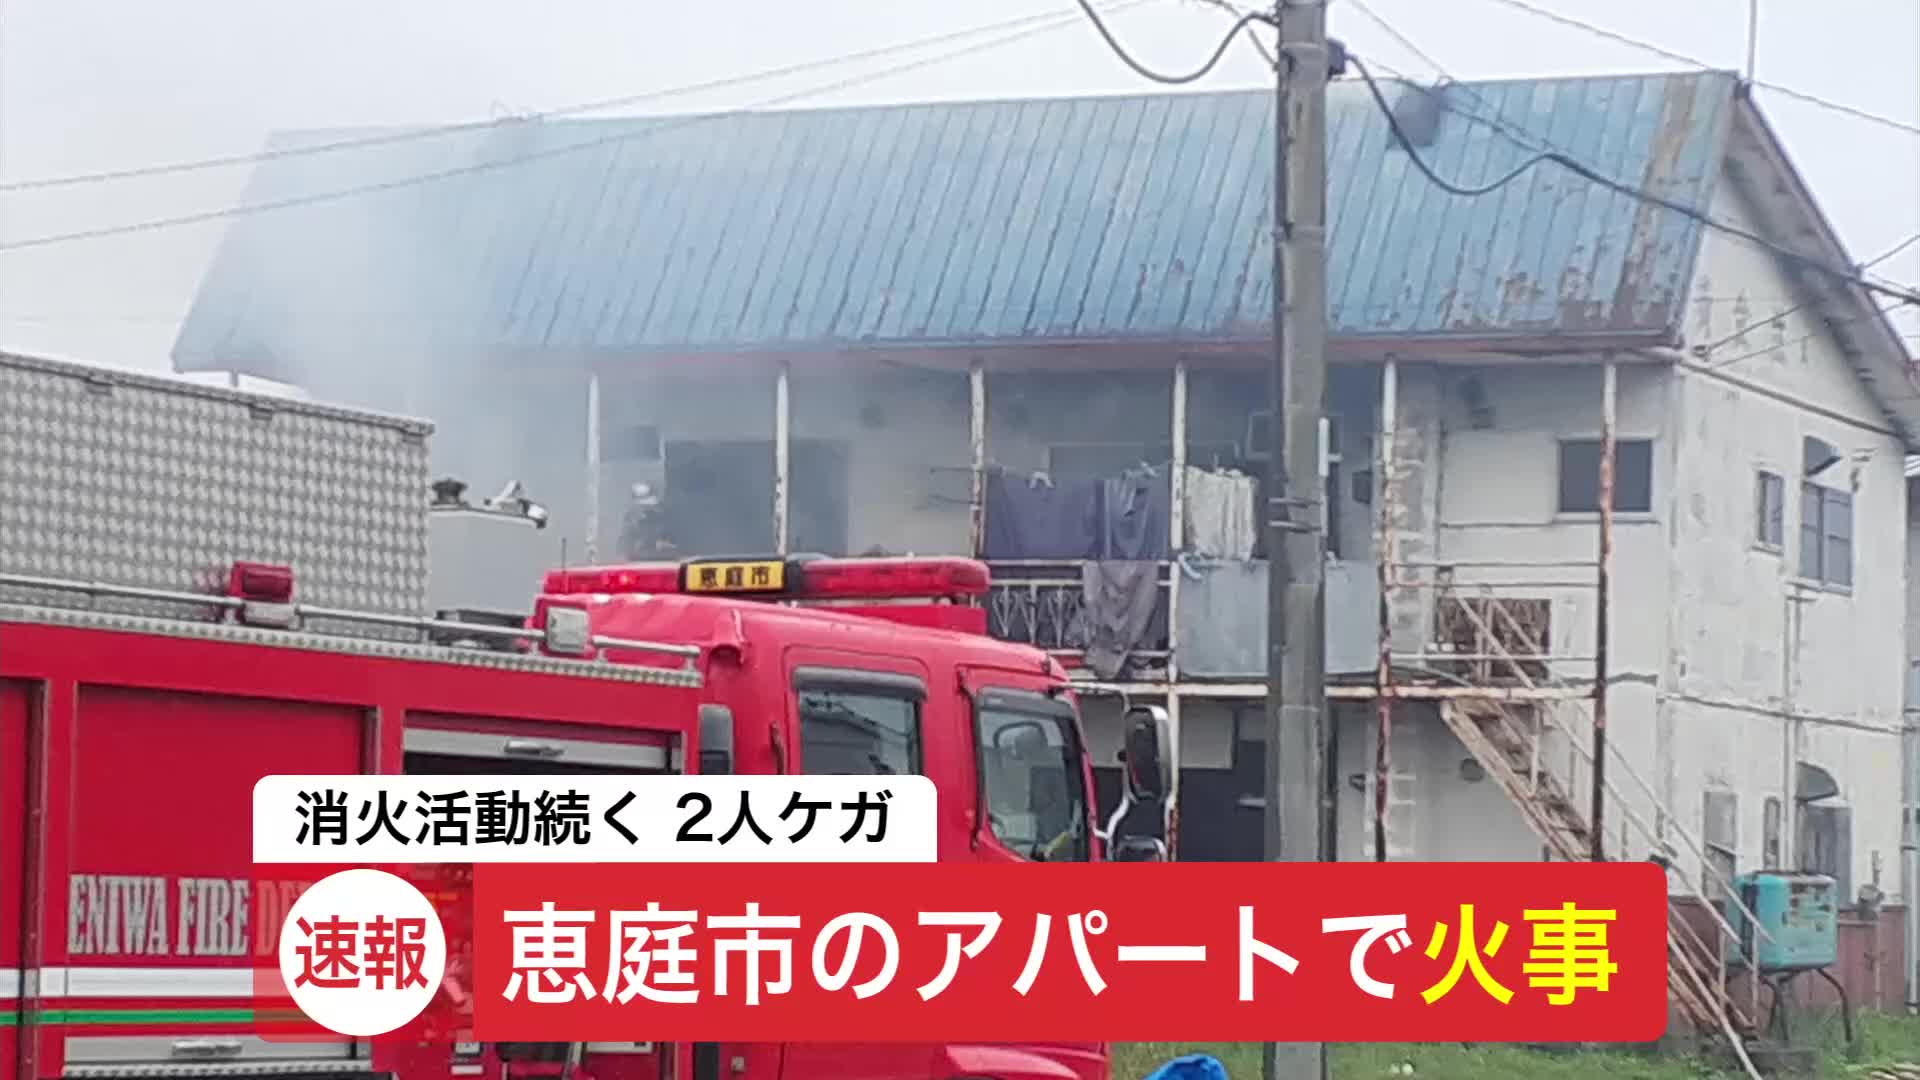 【速報】北海道・恵庭市のアパートで火事 成人の男女とみられる2人搬送 消火活動続く